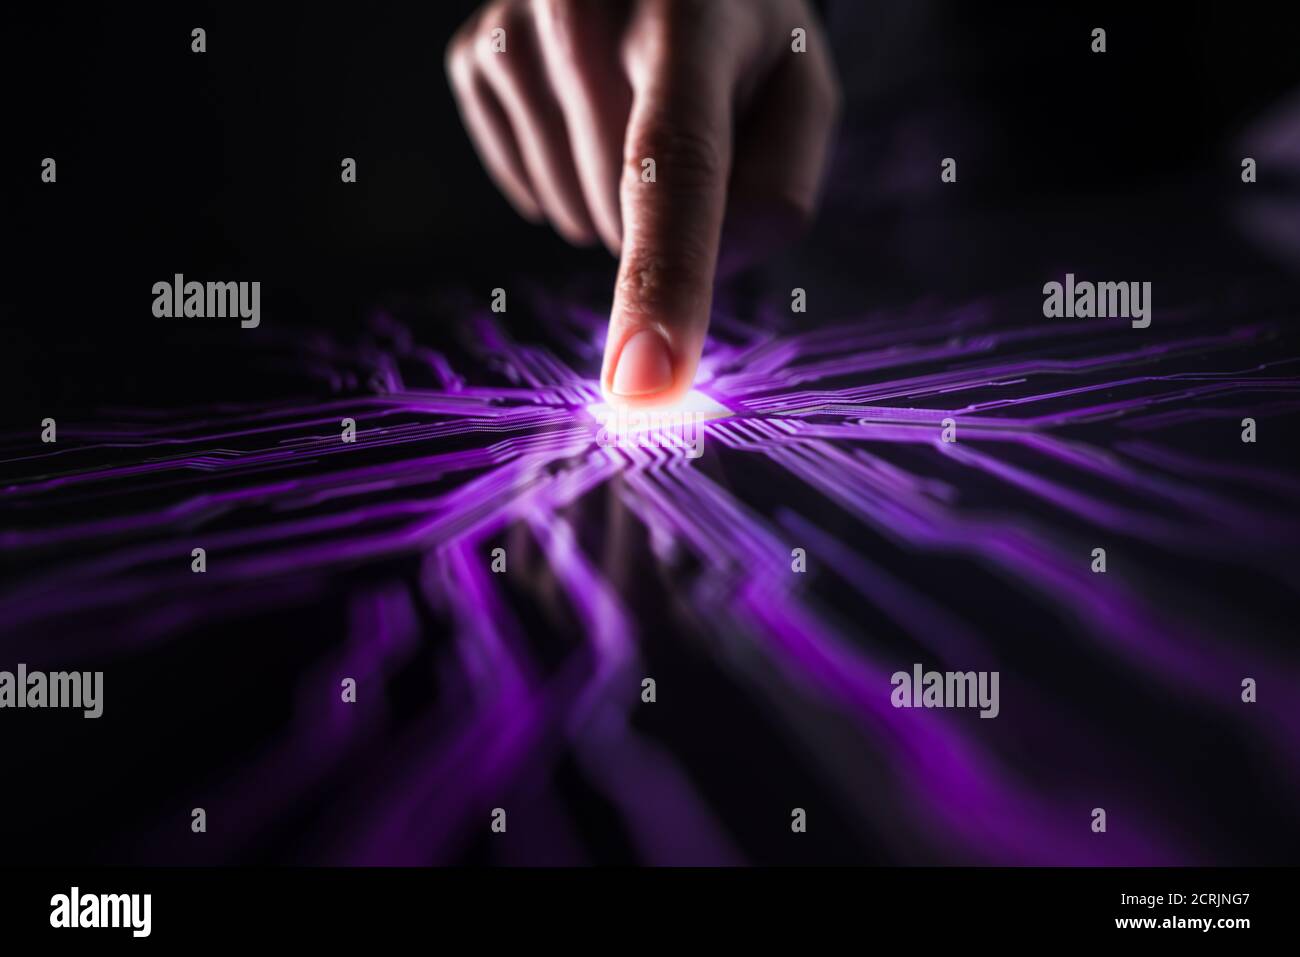 Cyber Security Hacking Konzept: Human Finger drückt Touchscreen-Taste und schafft Computer-Virus. Rosa und violette Visualisierung der Digitalisierung von Stockfoto